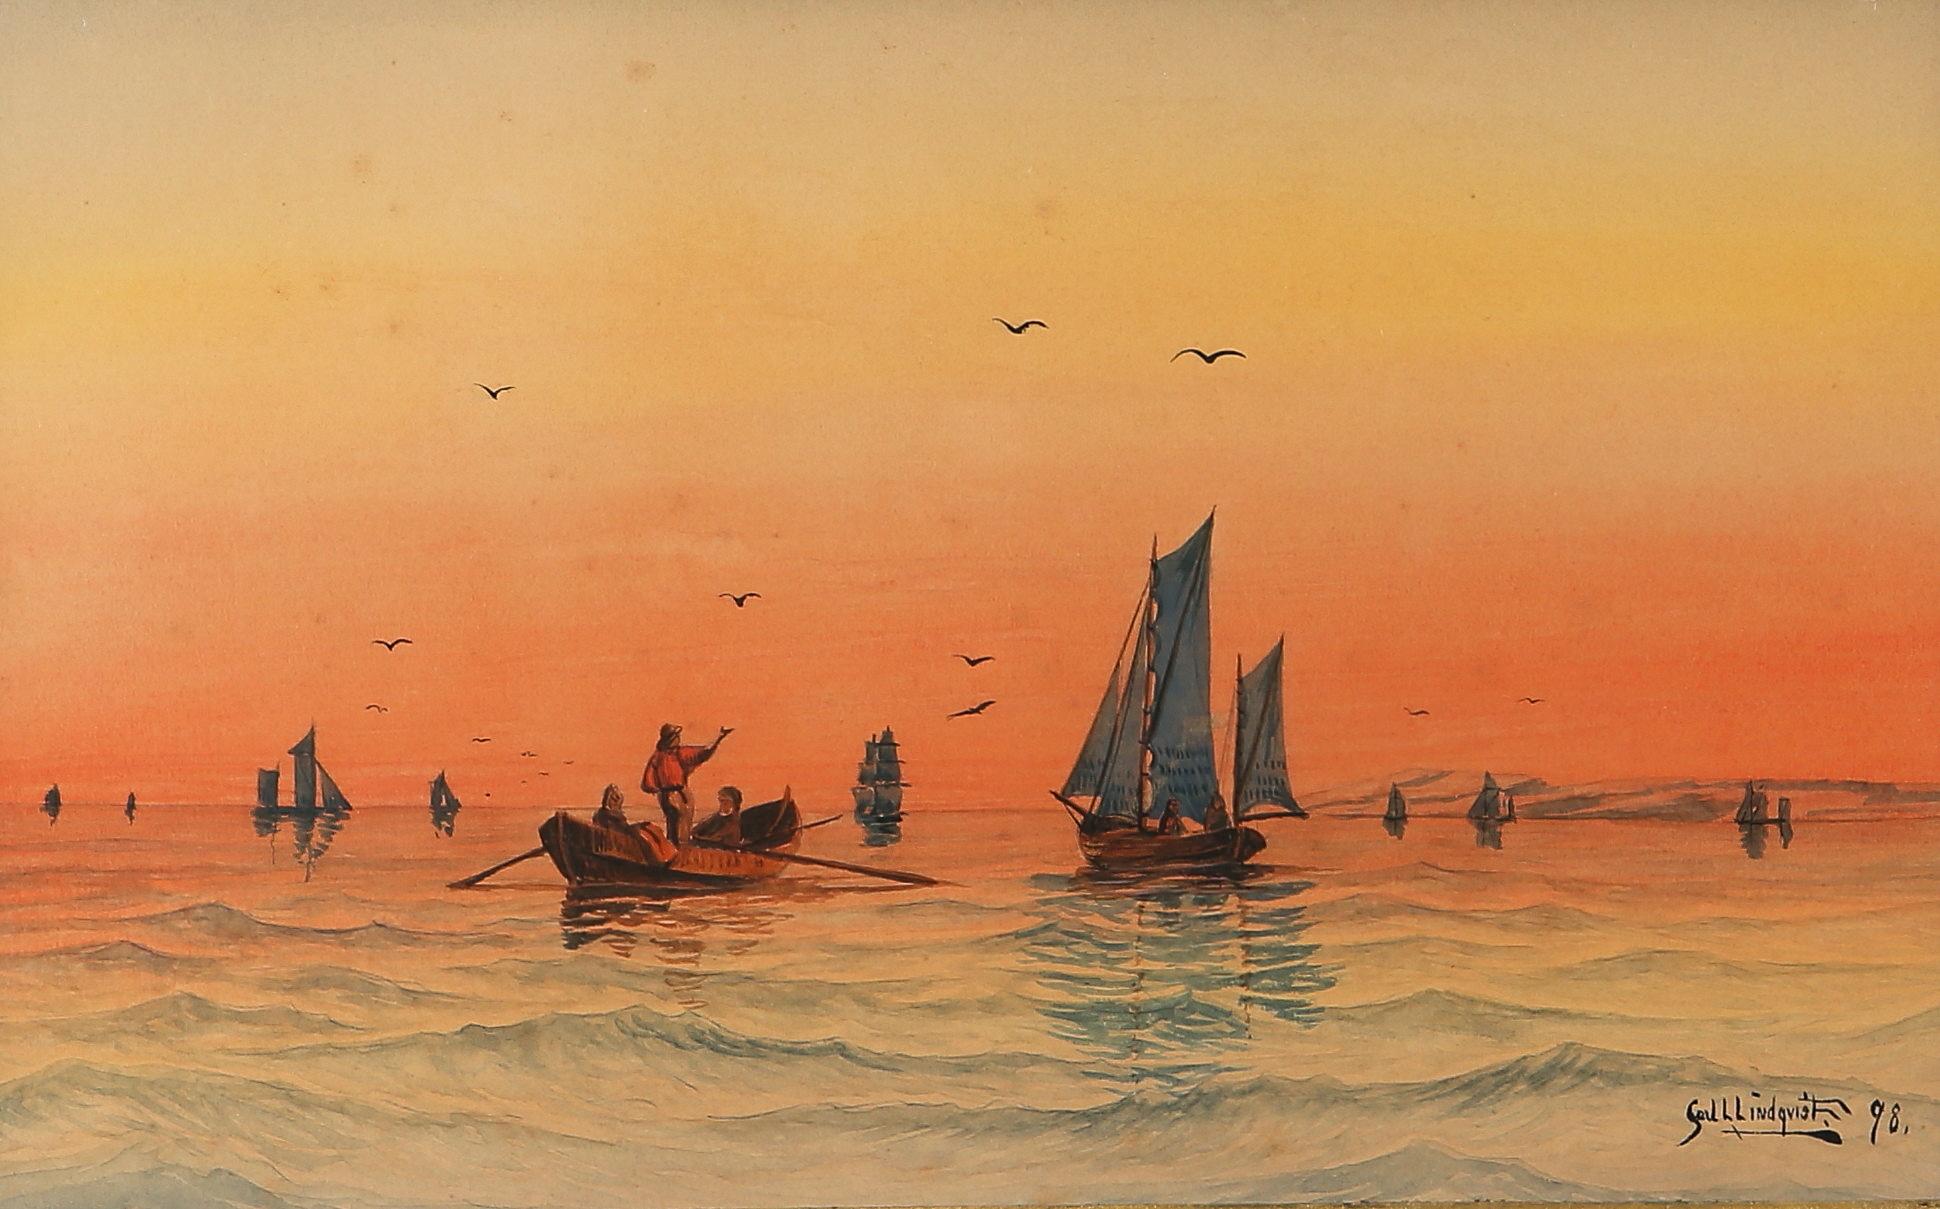 Entdecken Sie dieses Aquarell "Sunset Sailors" von Carl L. Lindqvist (1856-1941).

Treten Sie ein in die bezaubernde Welt des schwedischen Künstlers Carl L. Lindqvist mit seinem fesselnden Aquarell mit dem Titel "Sunset Sailors". Das 1898